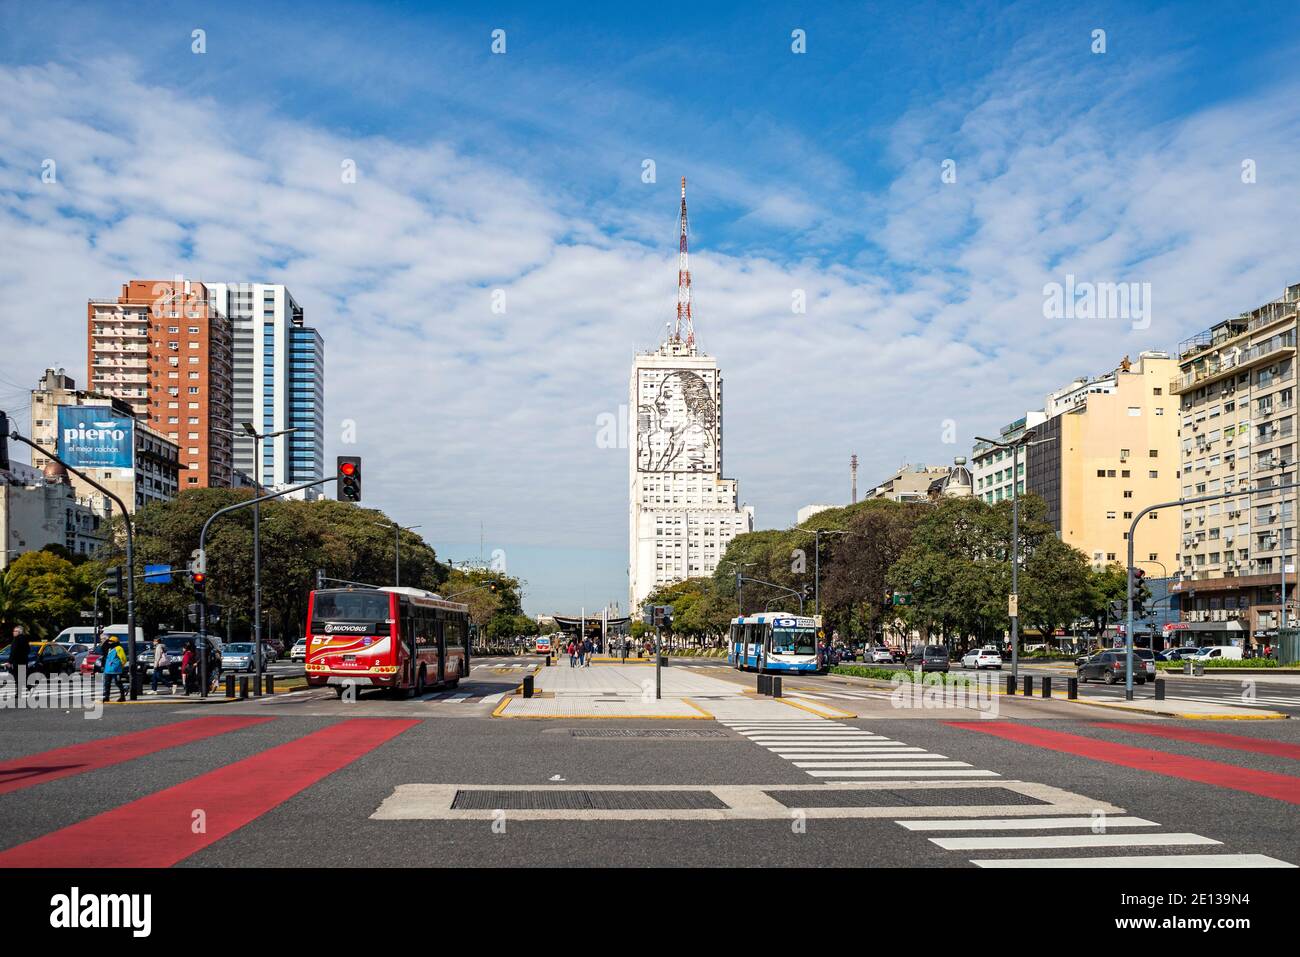 Plaza de la Republica à Buenos Aires. L'Avenida 9 de Julio et le bâtiment du ministère des travaux publics avec l'image d'Evita en arrière-plan Banque D'Images